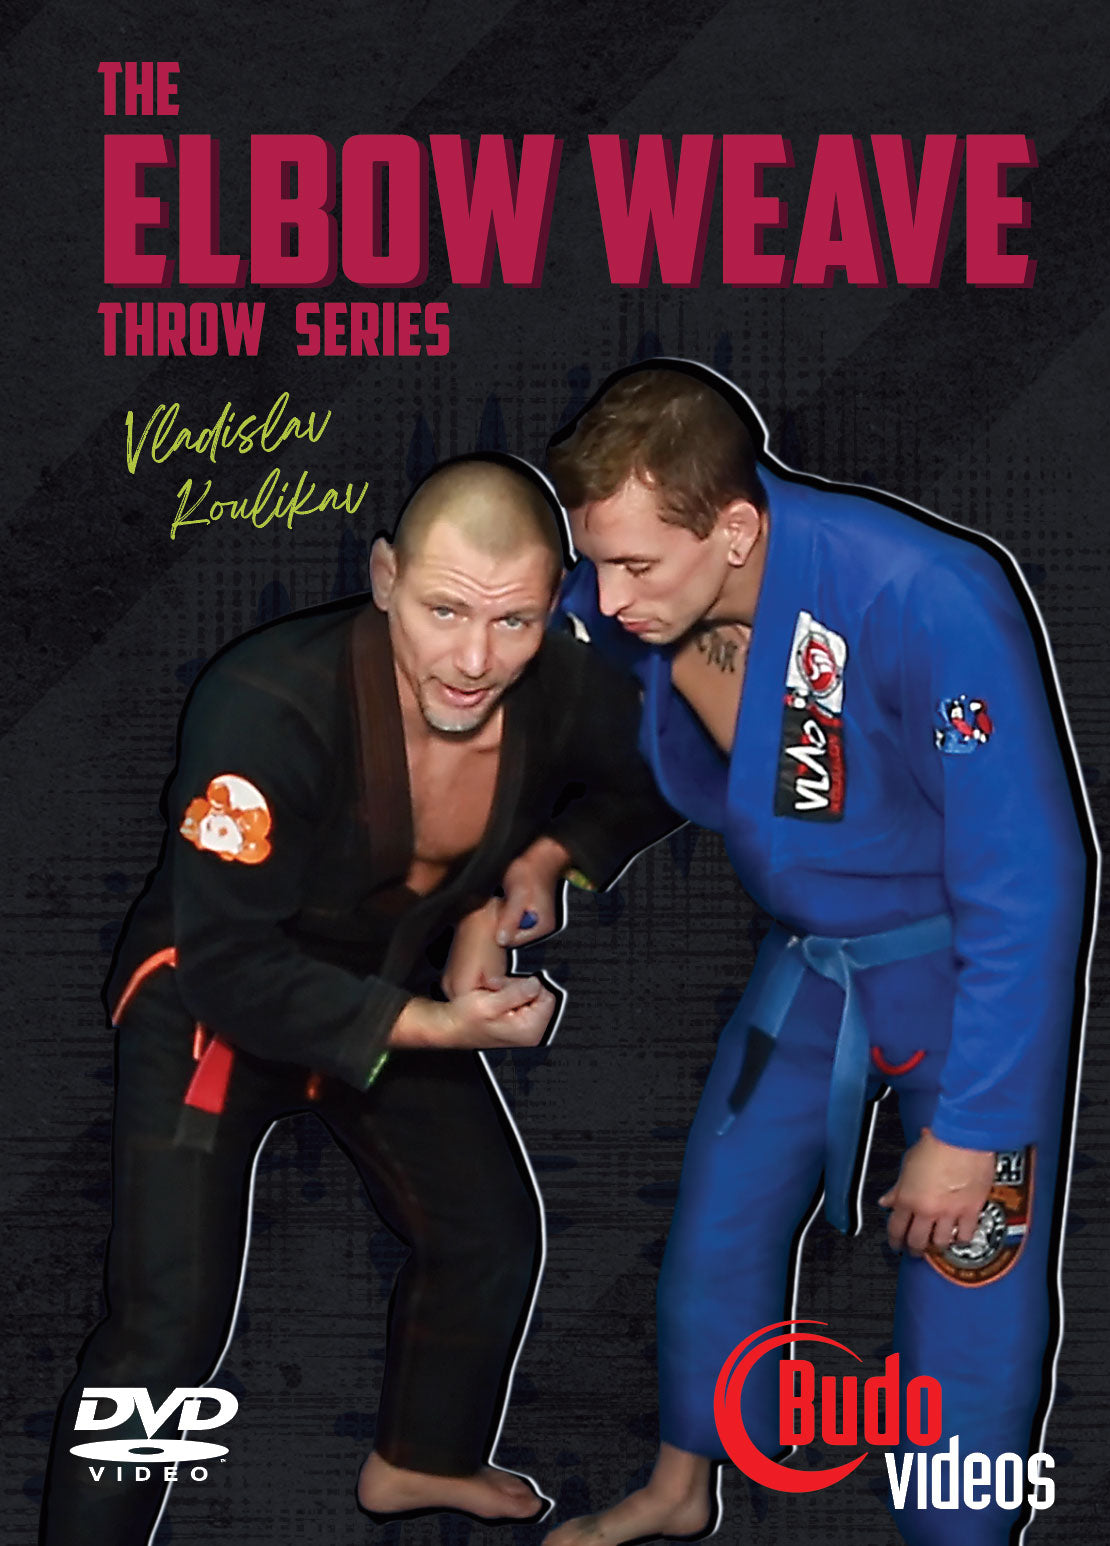 The Elbow Weave Throw Series DVD by Vladislav Koulikov - Budovideos